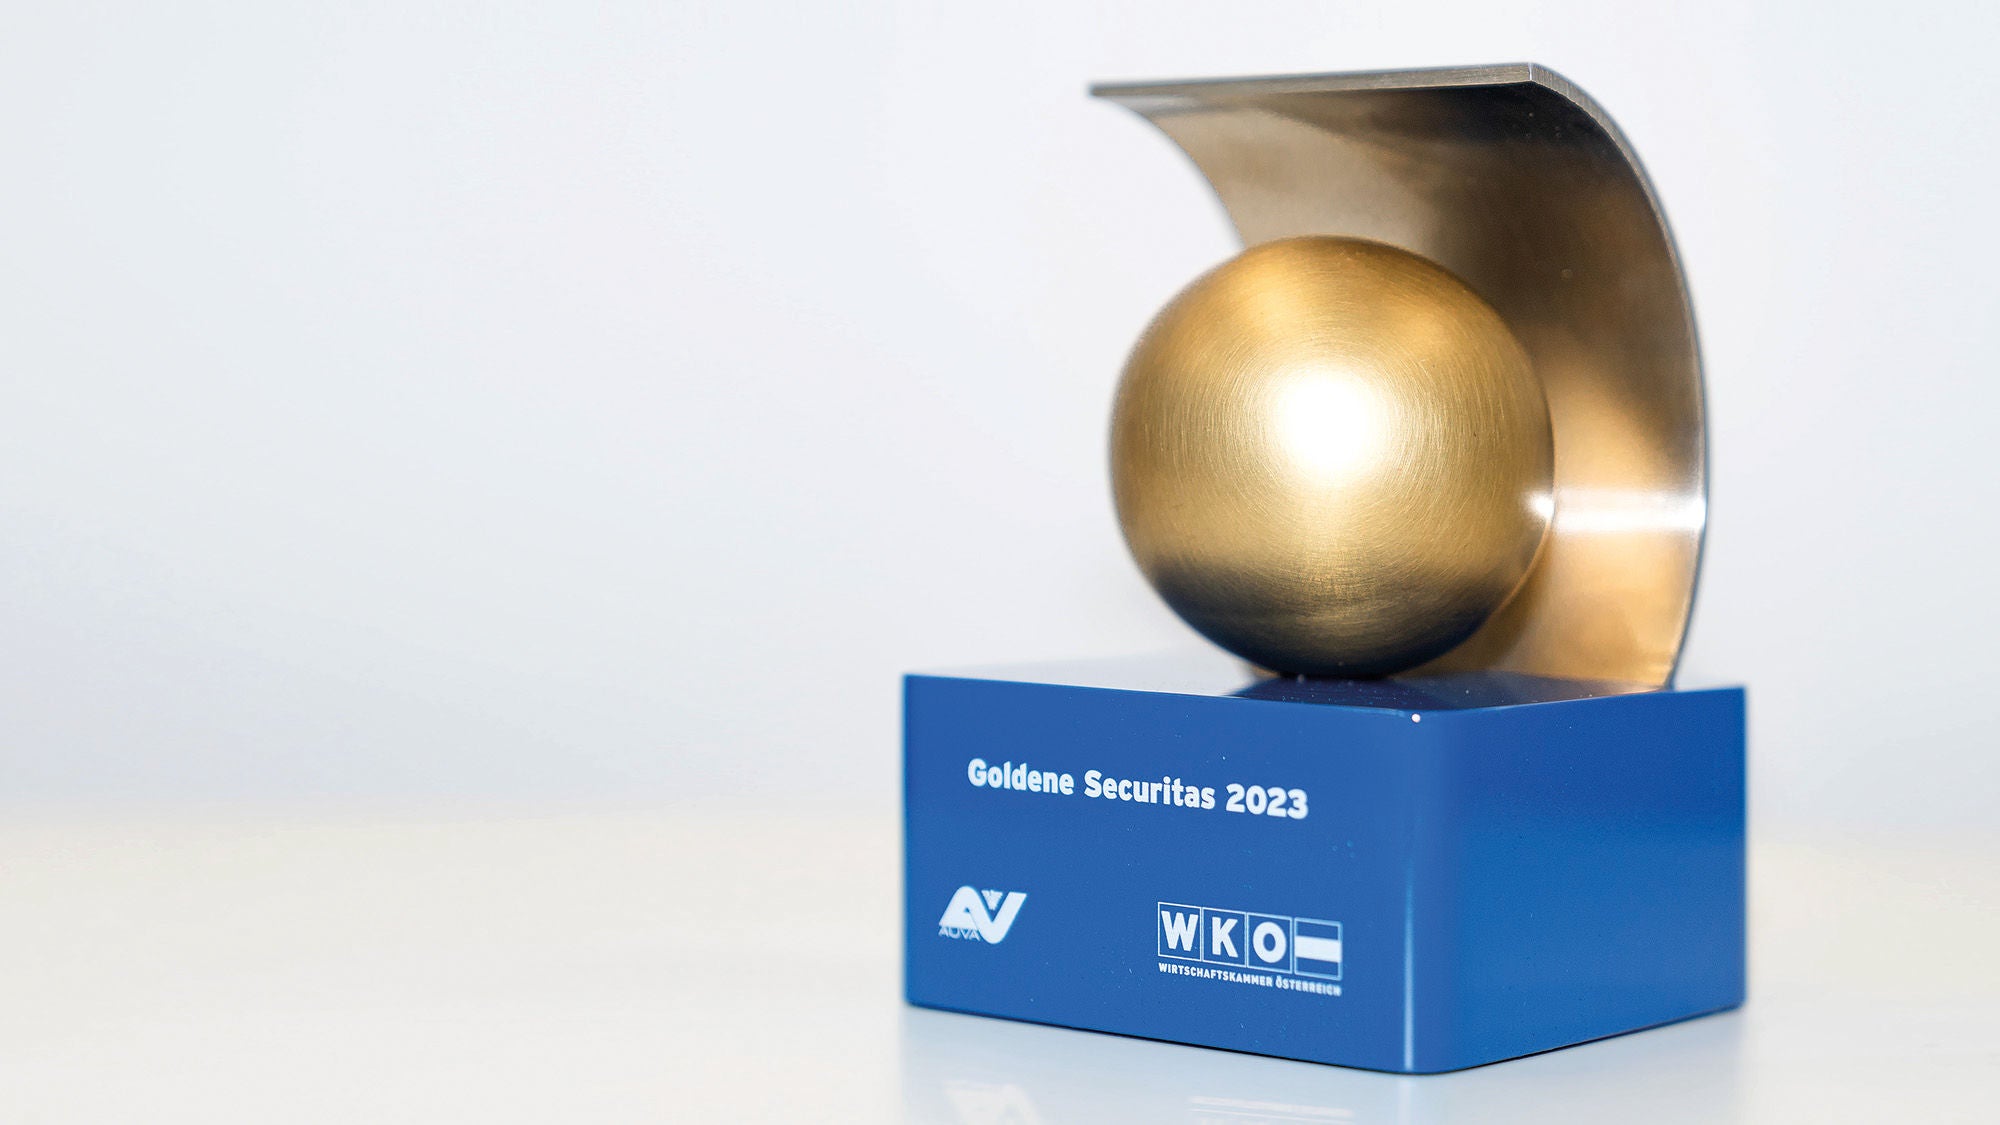 eine kleine Skulptur mit einer goldenen Kugel auf einem blauen Podest mit der Aufschrift Goldene Securitas 2023, AUVA, WKO